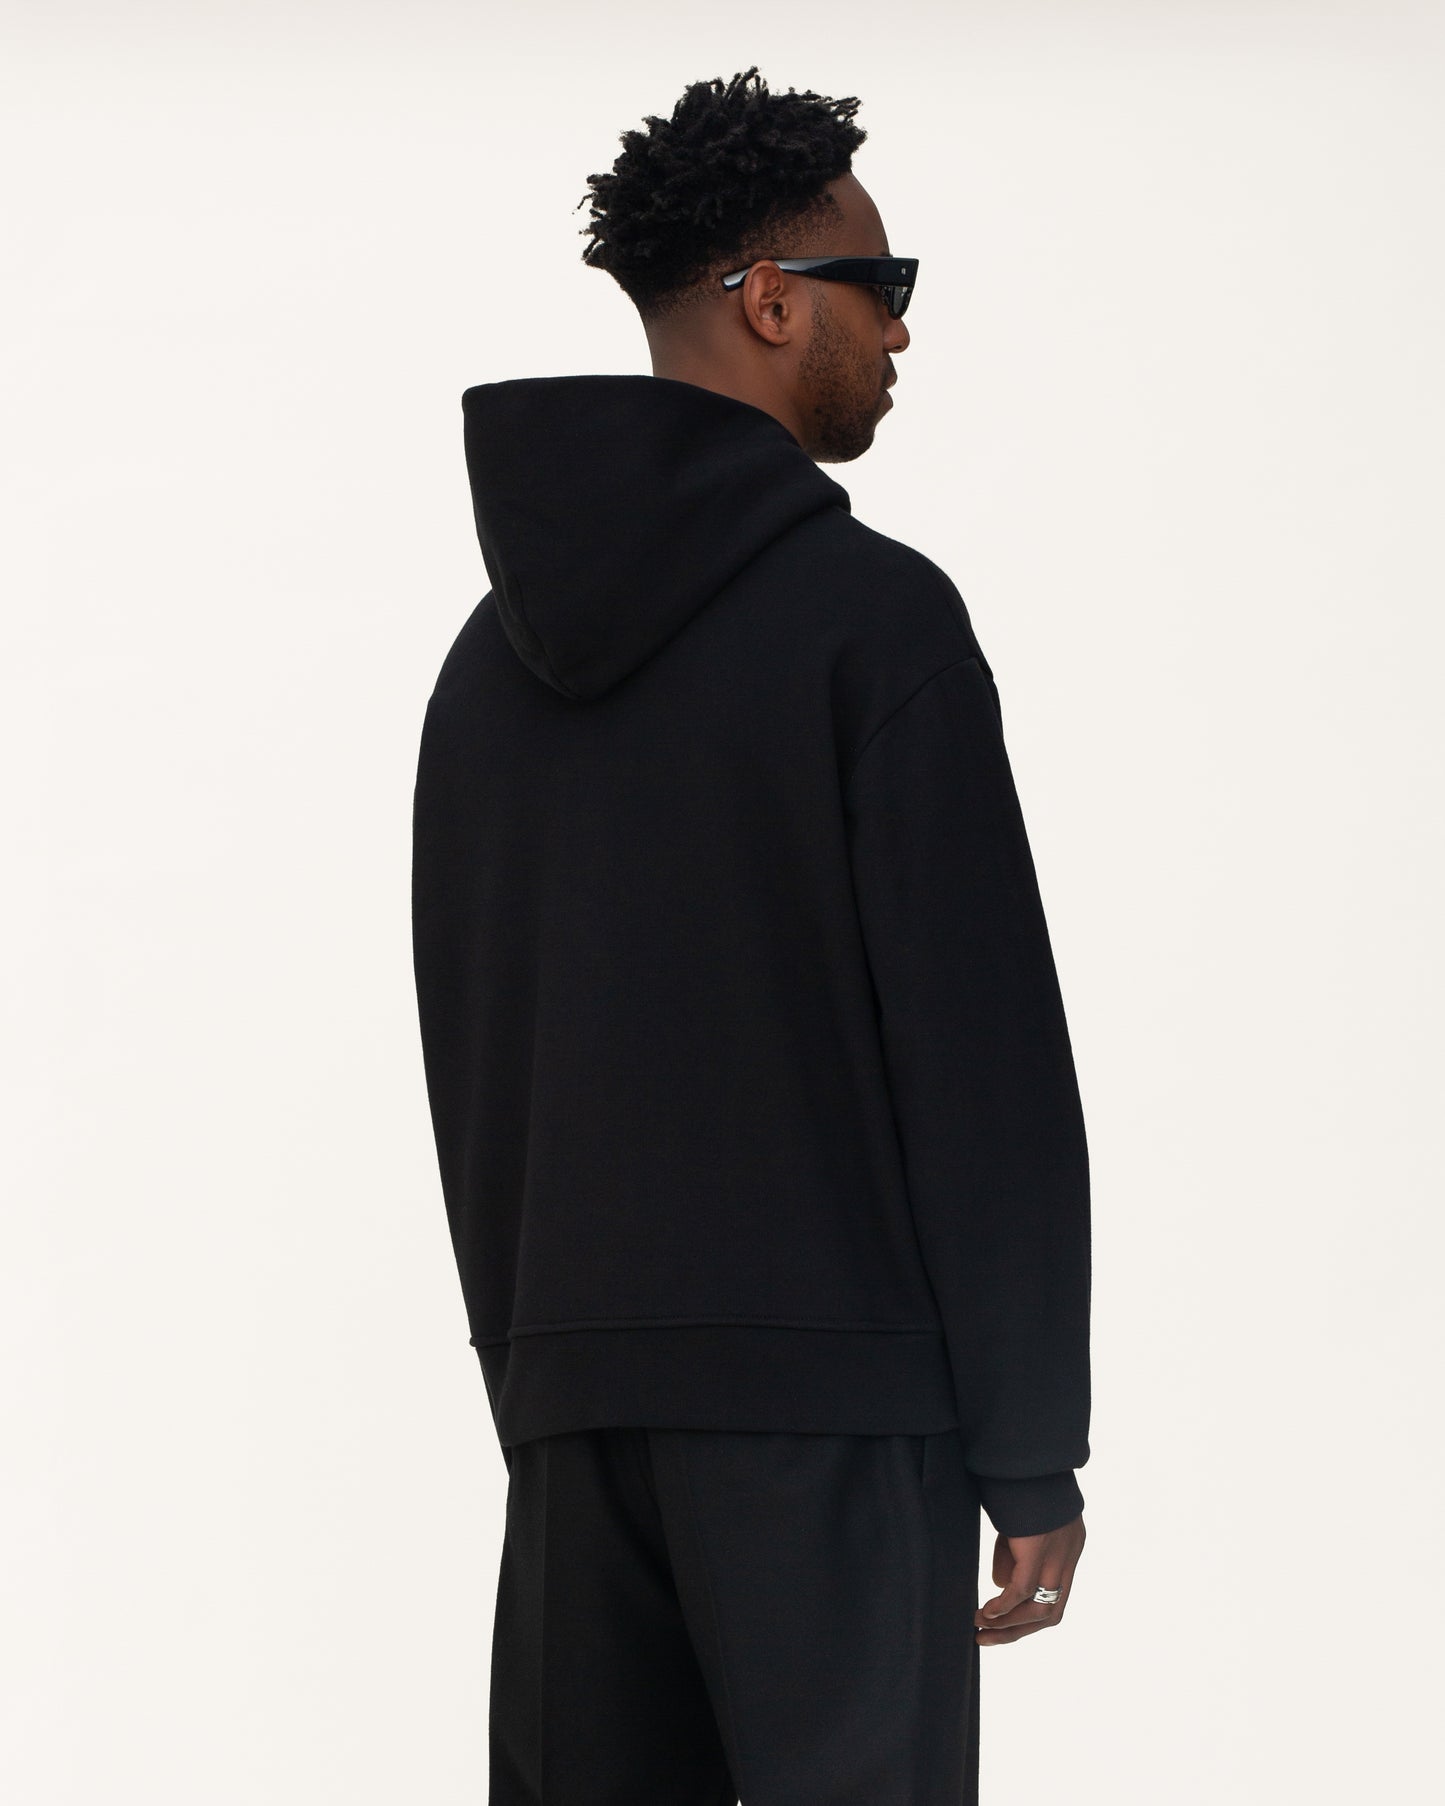 zip up hoodies, black hoodie, mens hoodie, back side